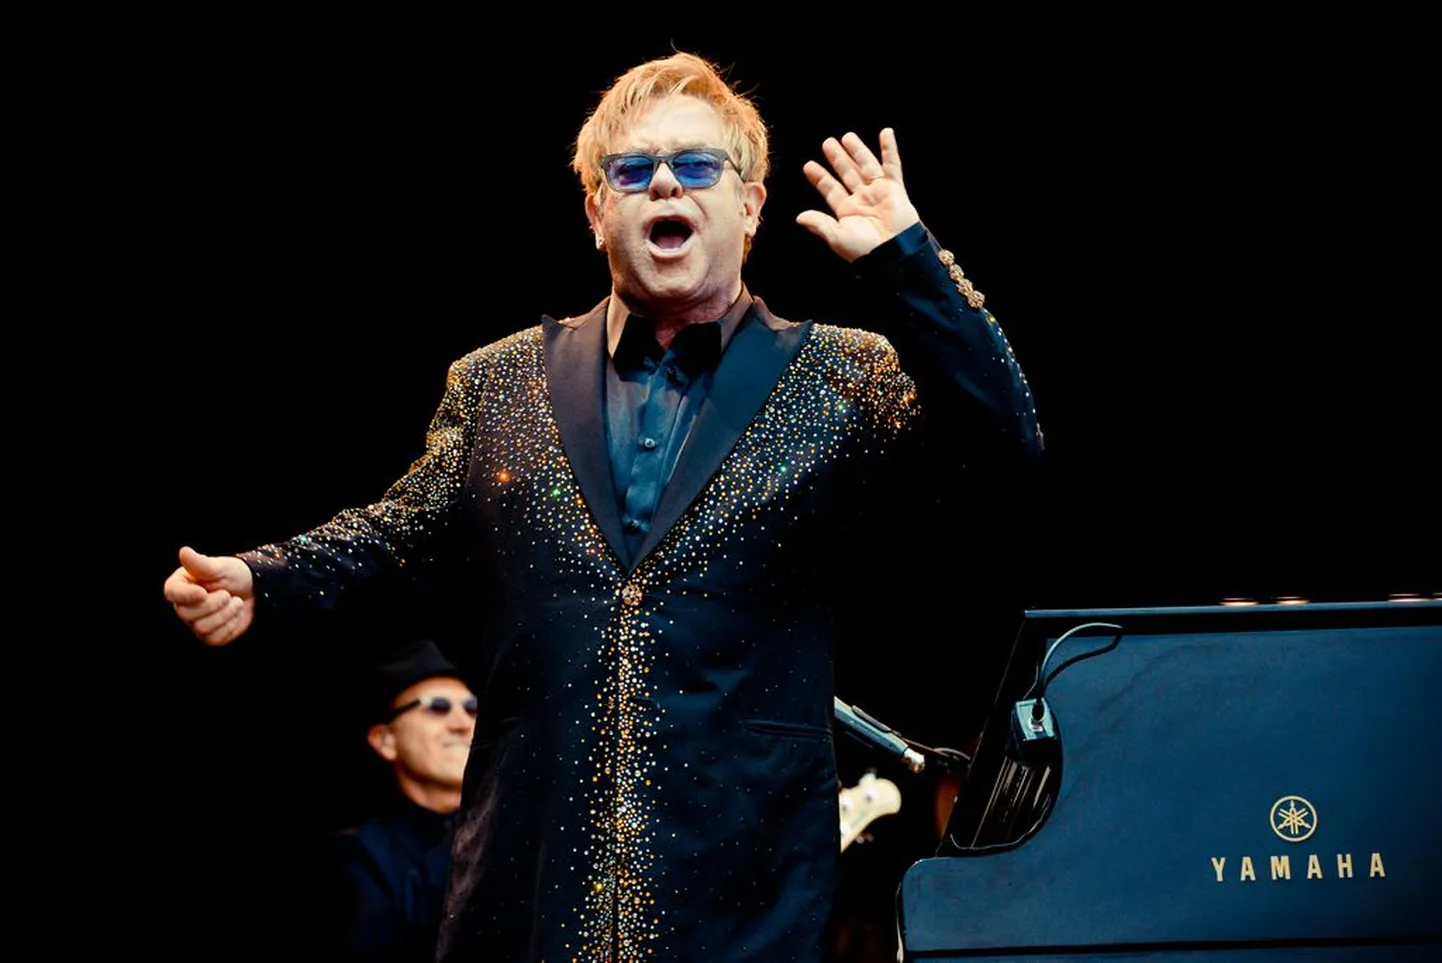 Publik Elton Johni kontserdil